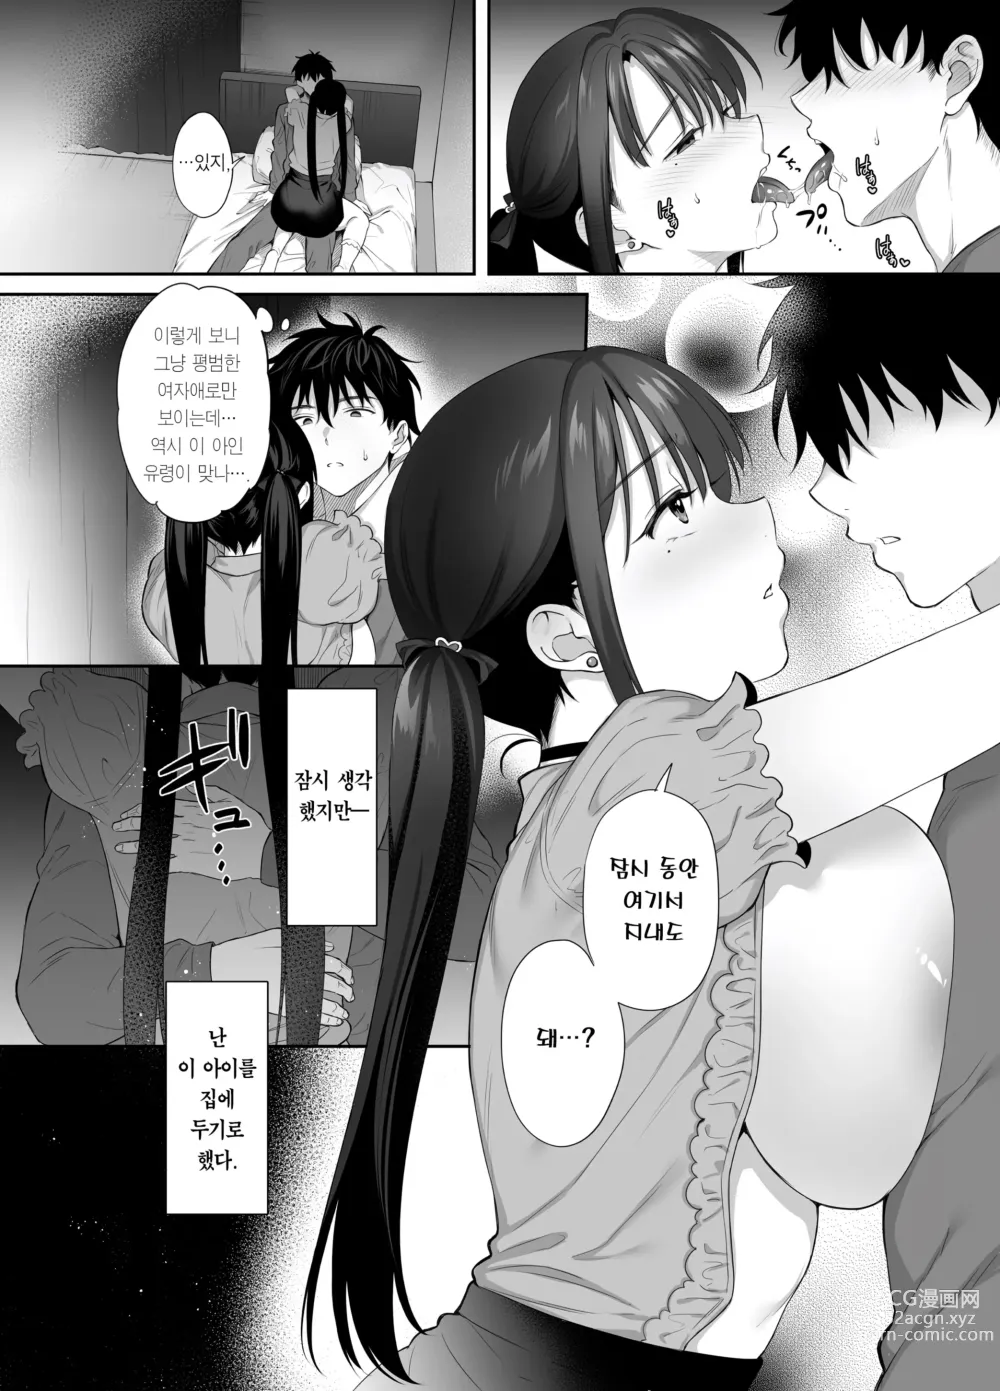 Page 23 of doujinshi 폐허에서 지뢰녀랑 밤새 질내사정 섹스한 이야기 2